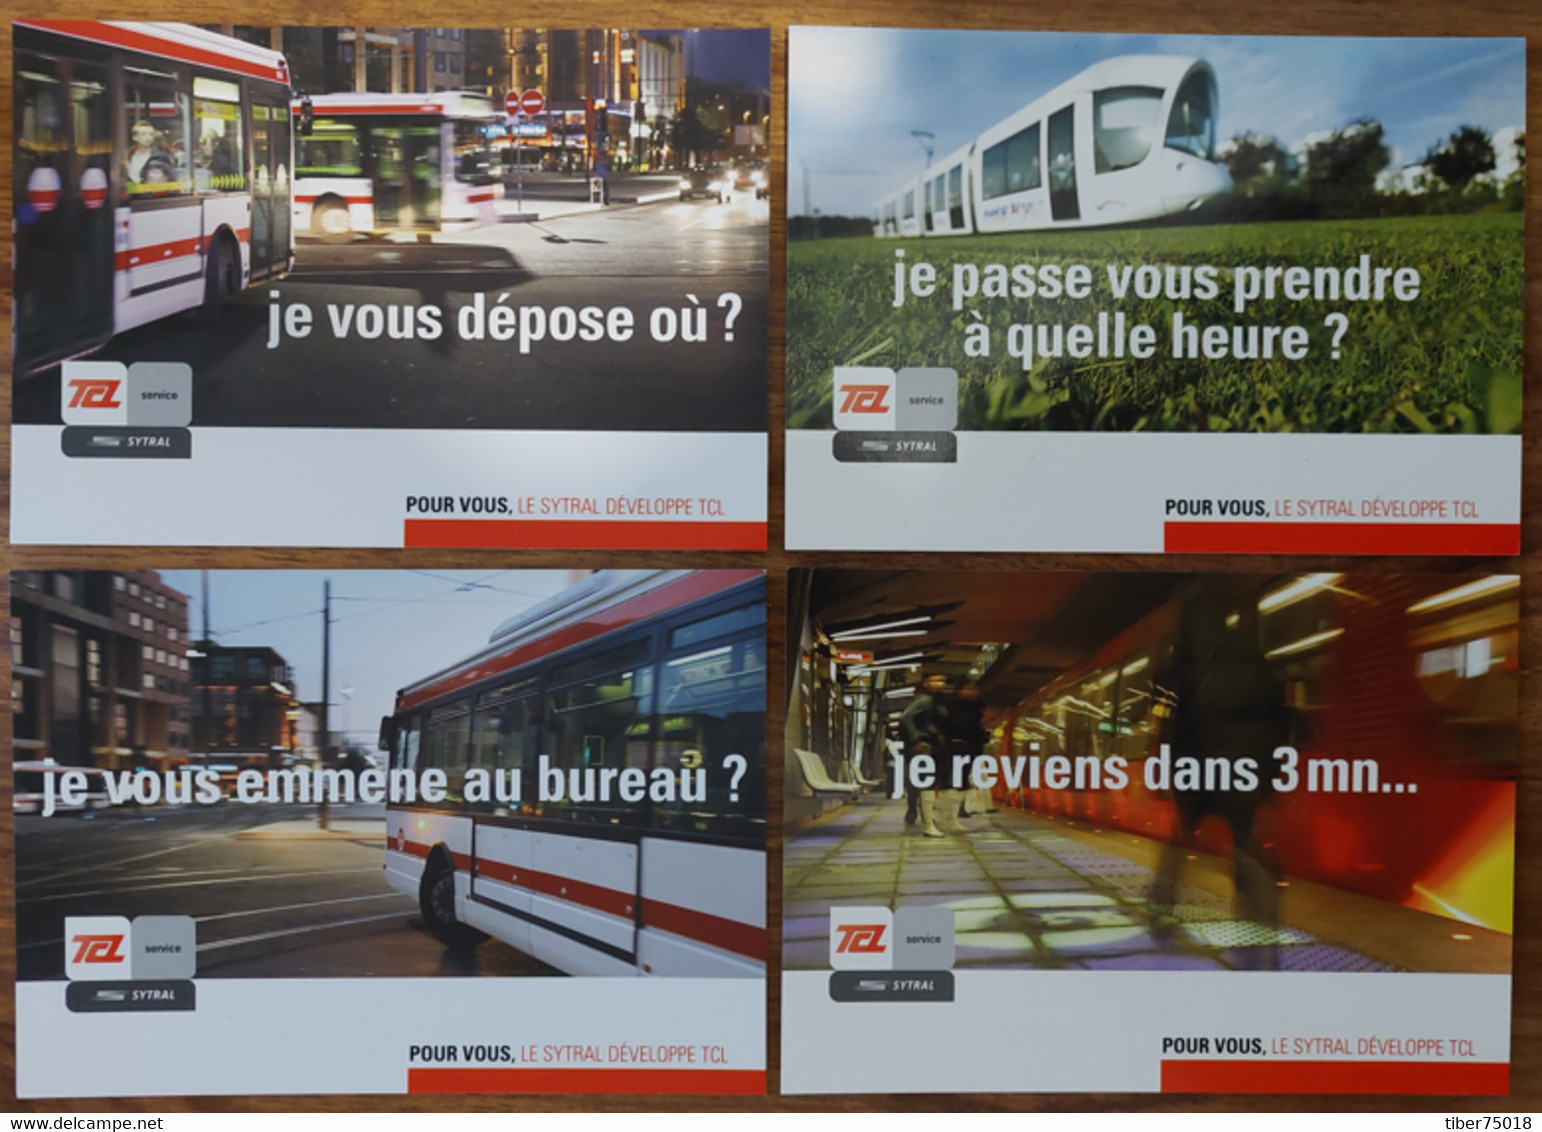 4 Cartes Postales "Descartes Media" (2007) TCL (Bus Tram Métro) Systral (Syndicat Transport Rhône Agglo Lyonnaise) - Publicité